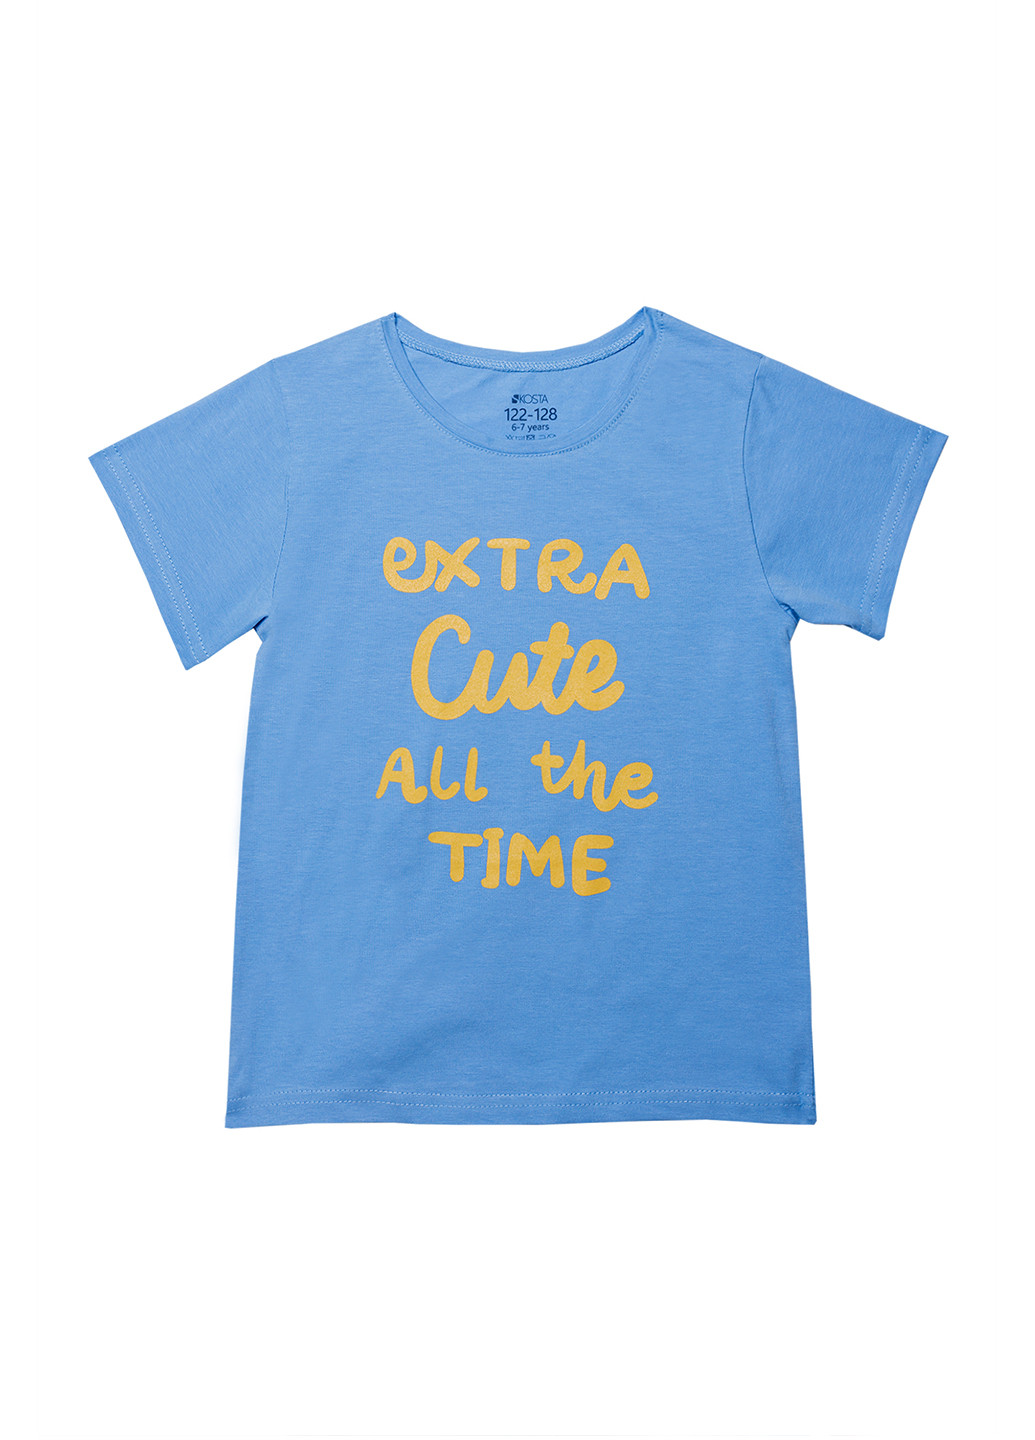 Голубая летняя футболка для девочки Kosta 2352-5